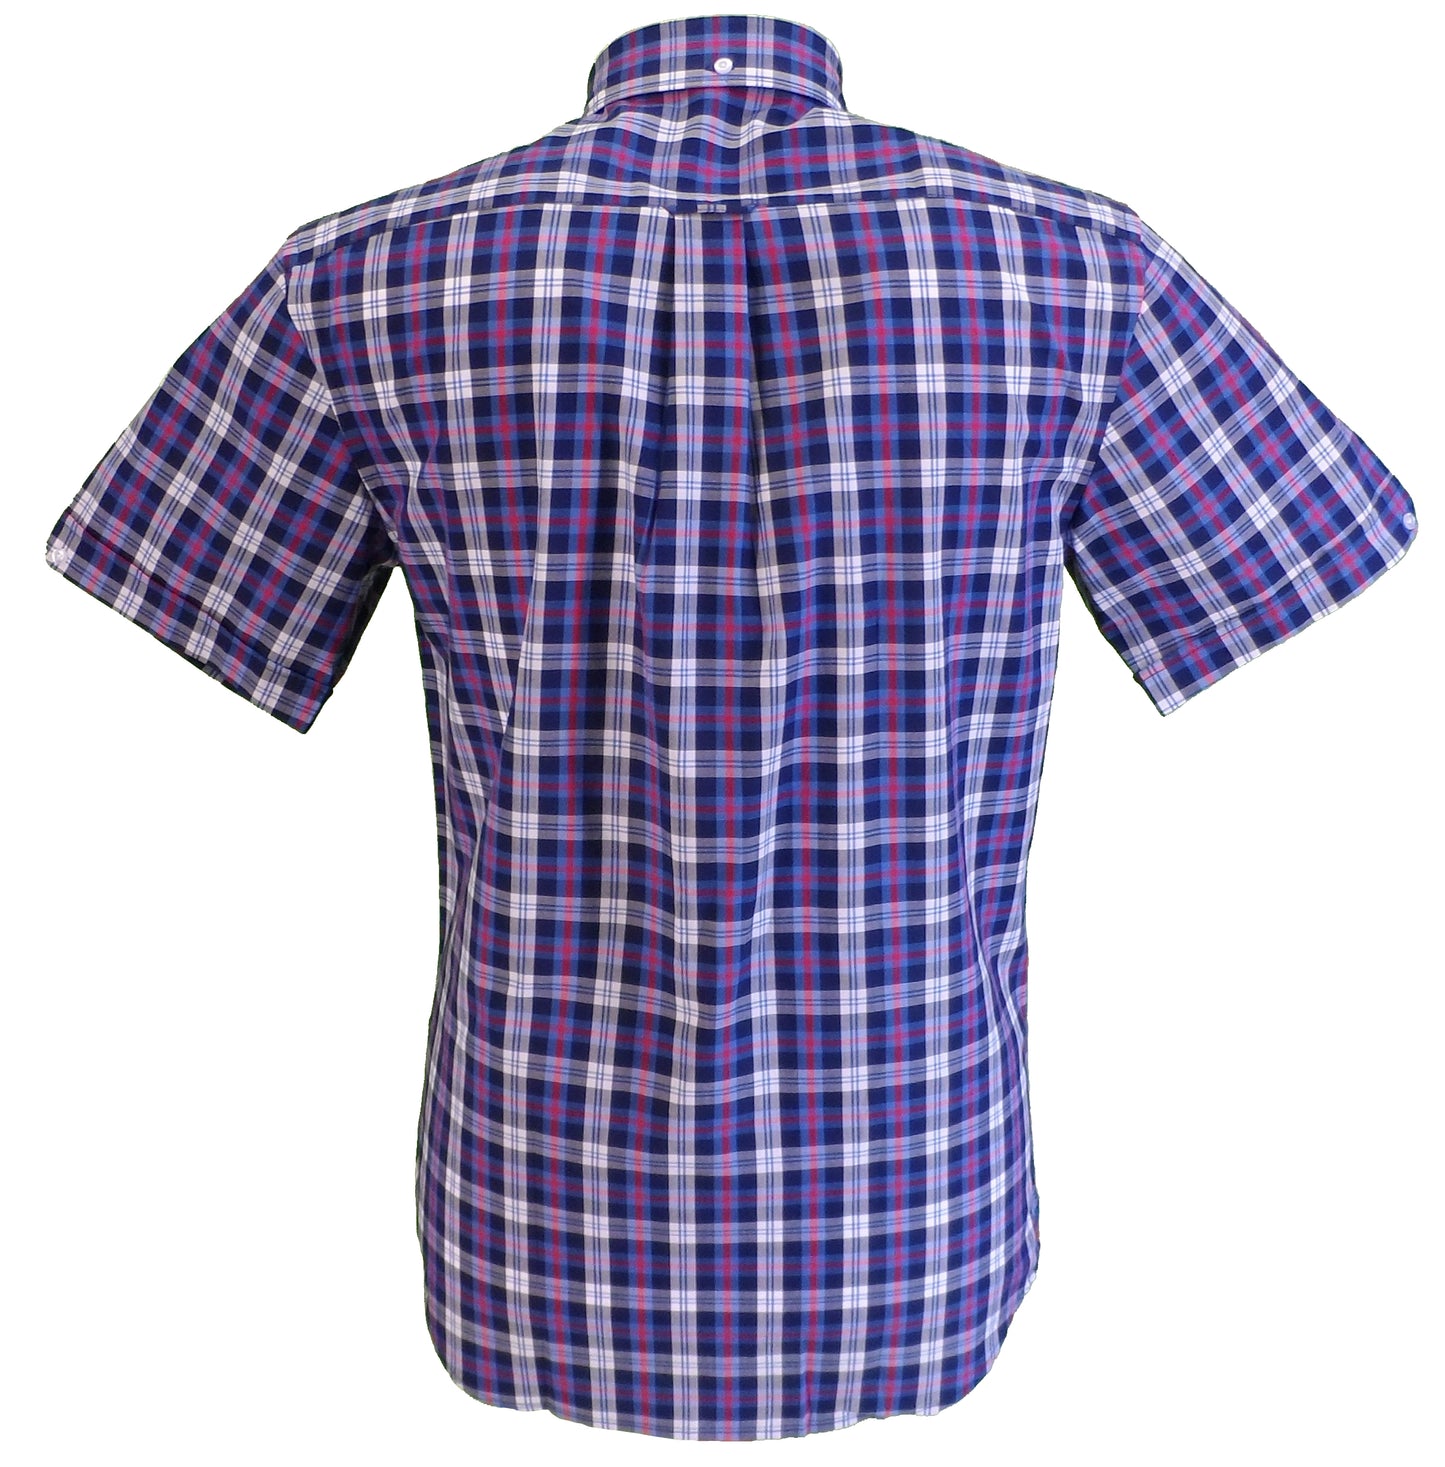 Mazeysメンズ ブルー/ホワイト/レッド 綿 100% 半袖シャツ